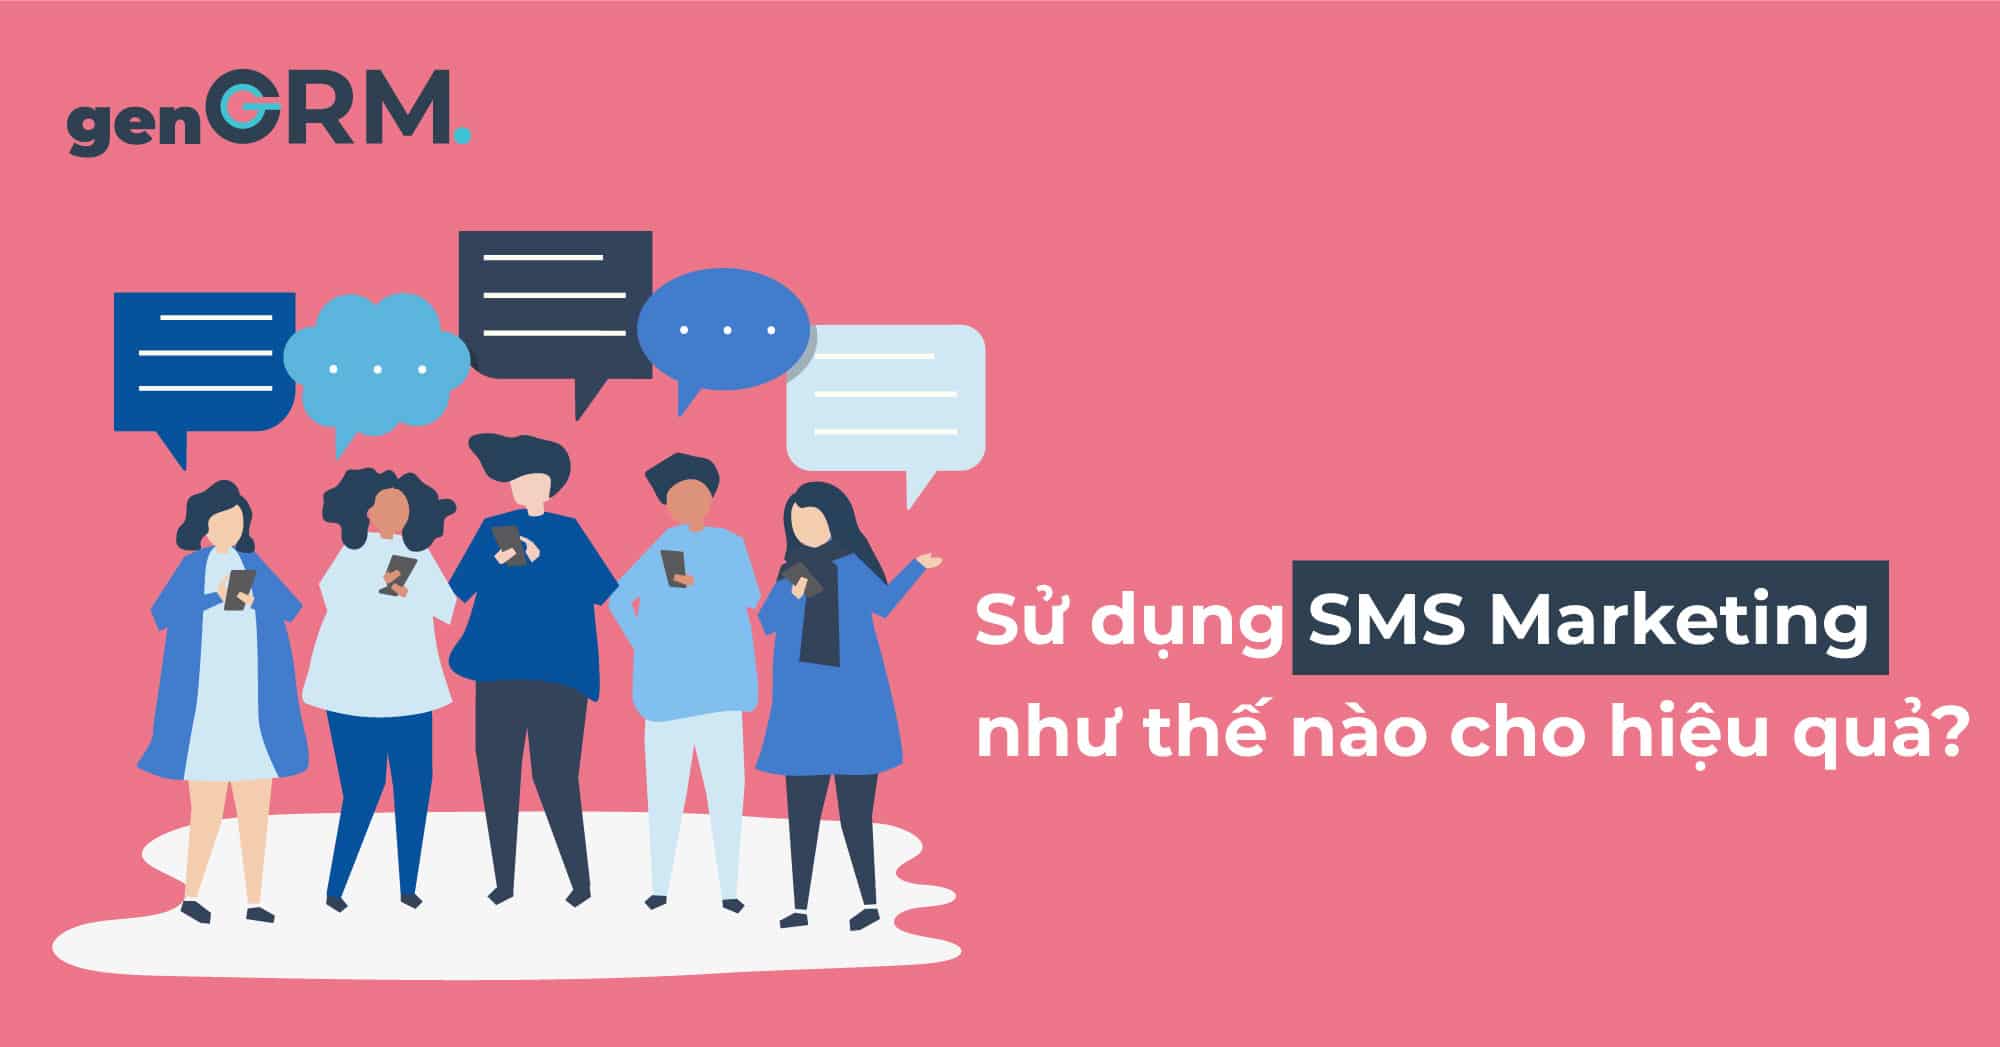 Sử dụng SMS marketing như thế nào cho hiệu quả